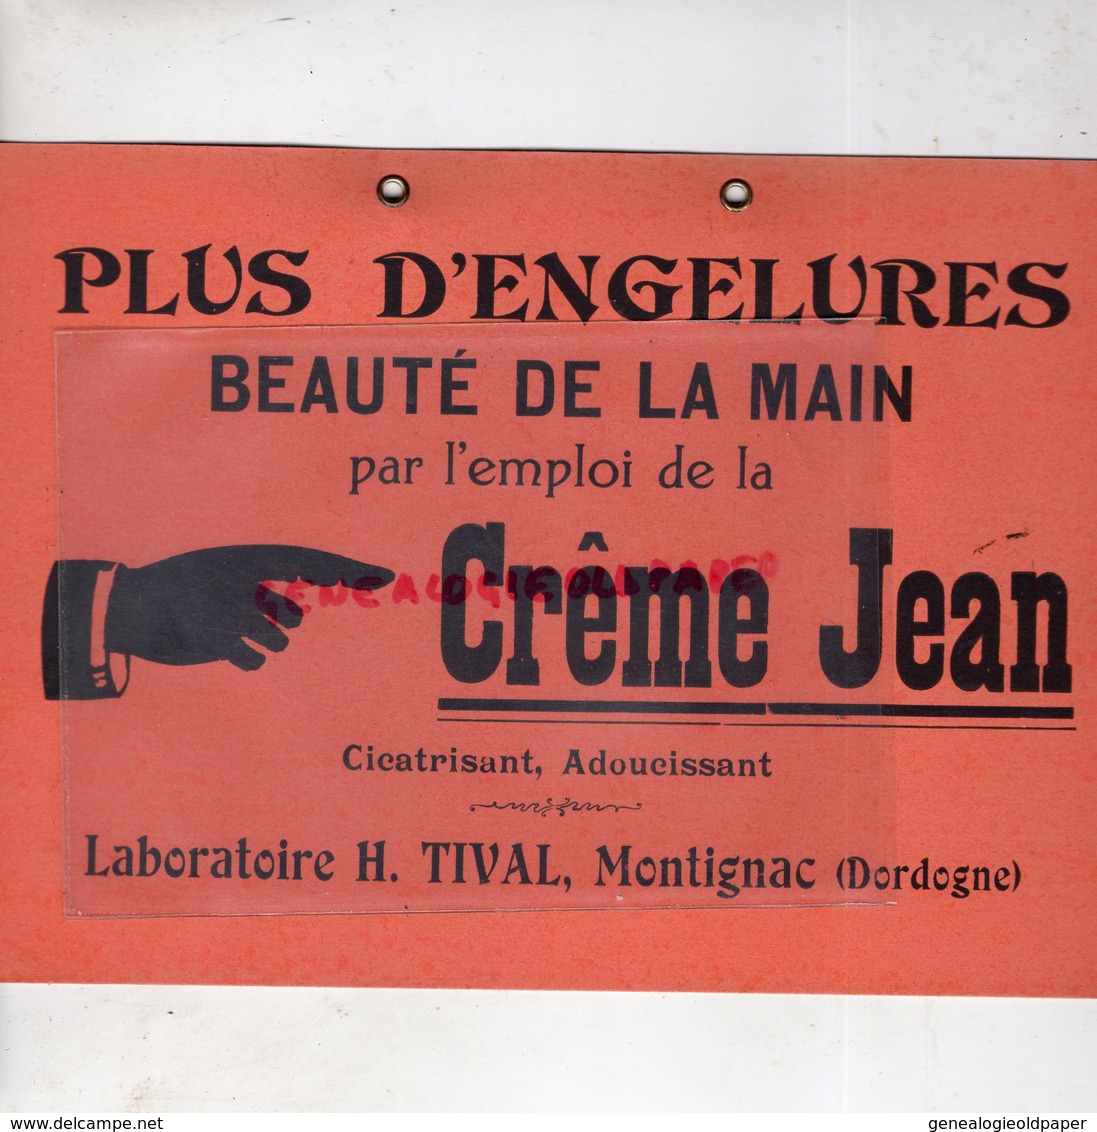 24- MONTIGNAC - RARE BEAU CARTON PUBLICITAIRE CREME JEAN -LABORATOIRE H. TIVAL - ENGELURES BEAUTE DE LA MAIN - Reclame